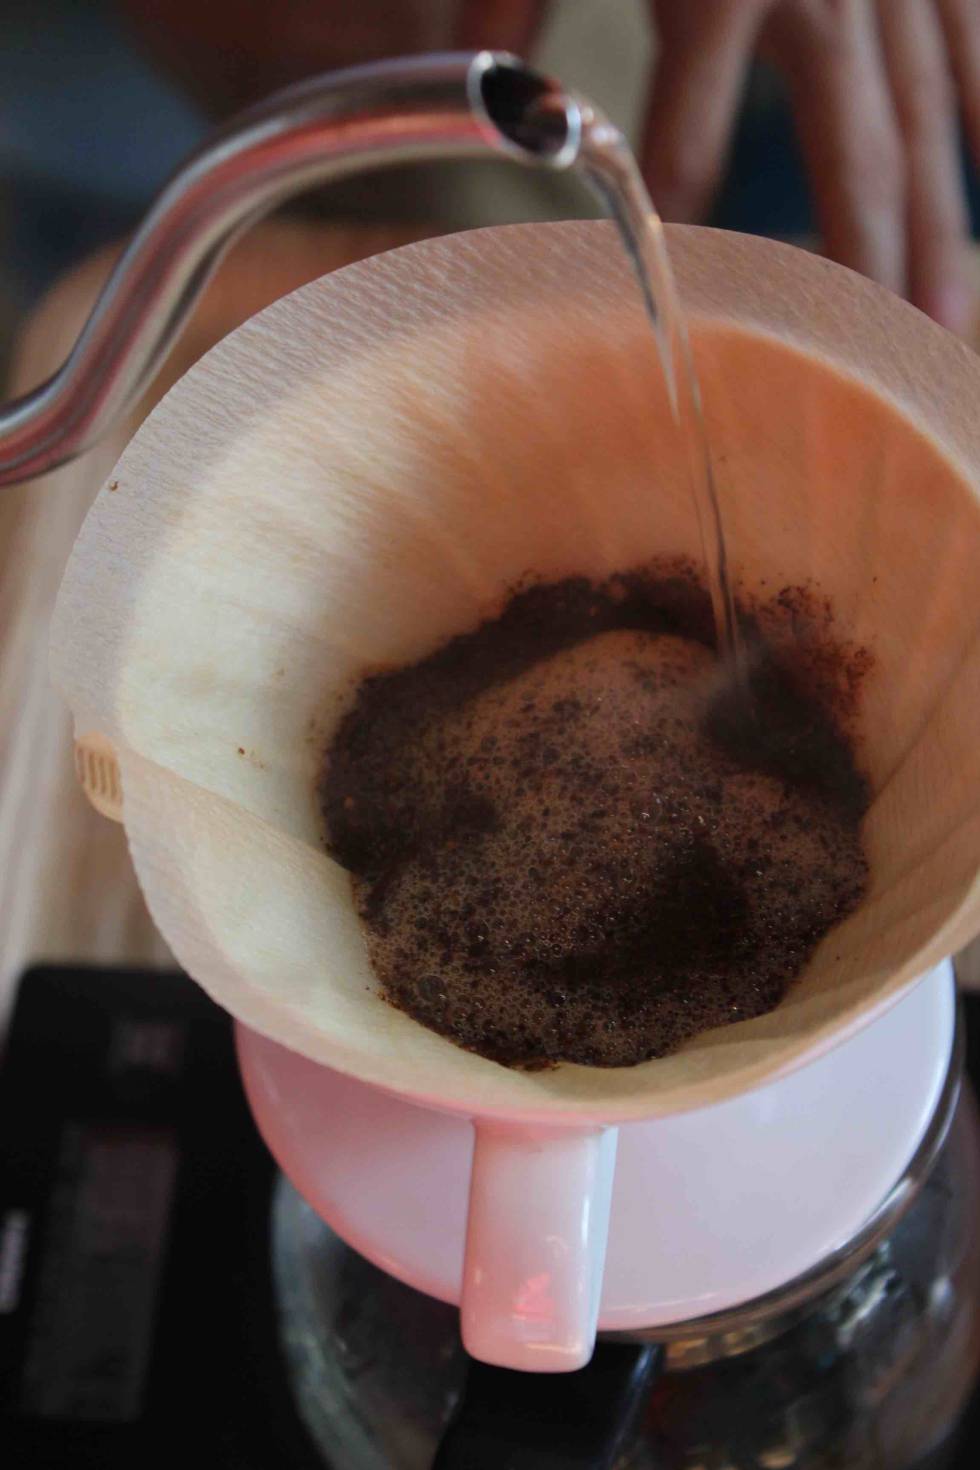 Descubriendo la excelencia del café con la cafetera Hario V60